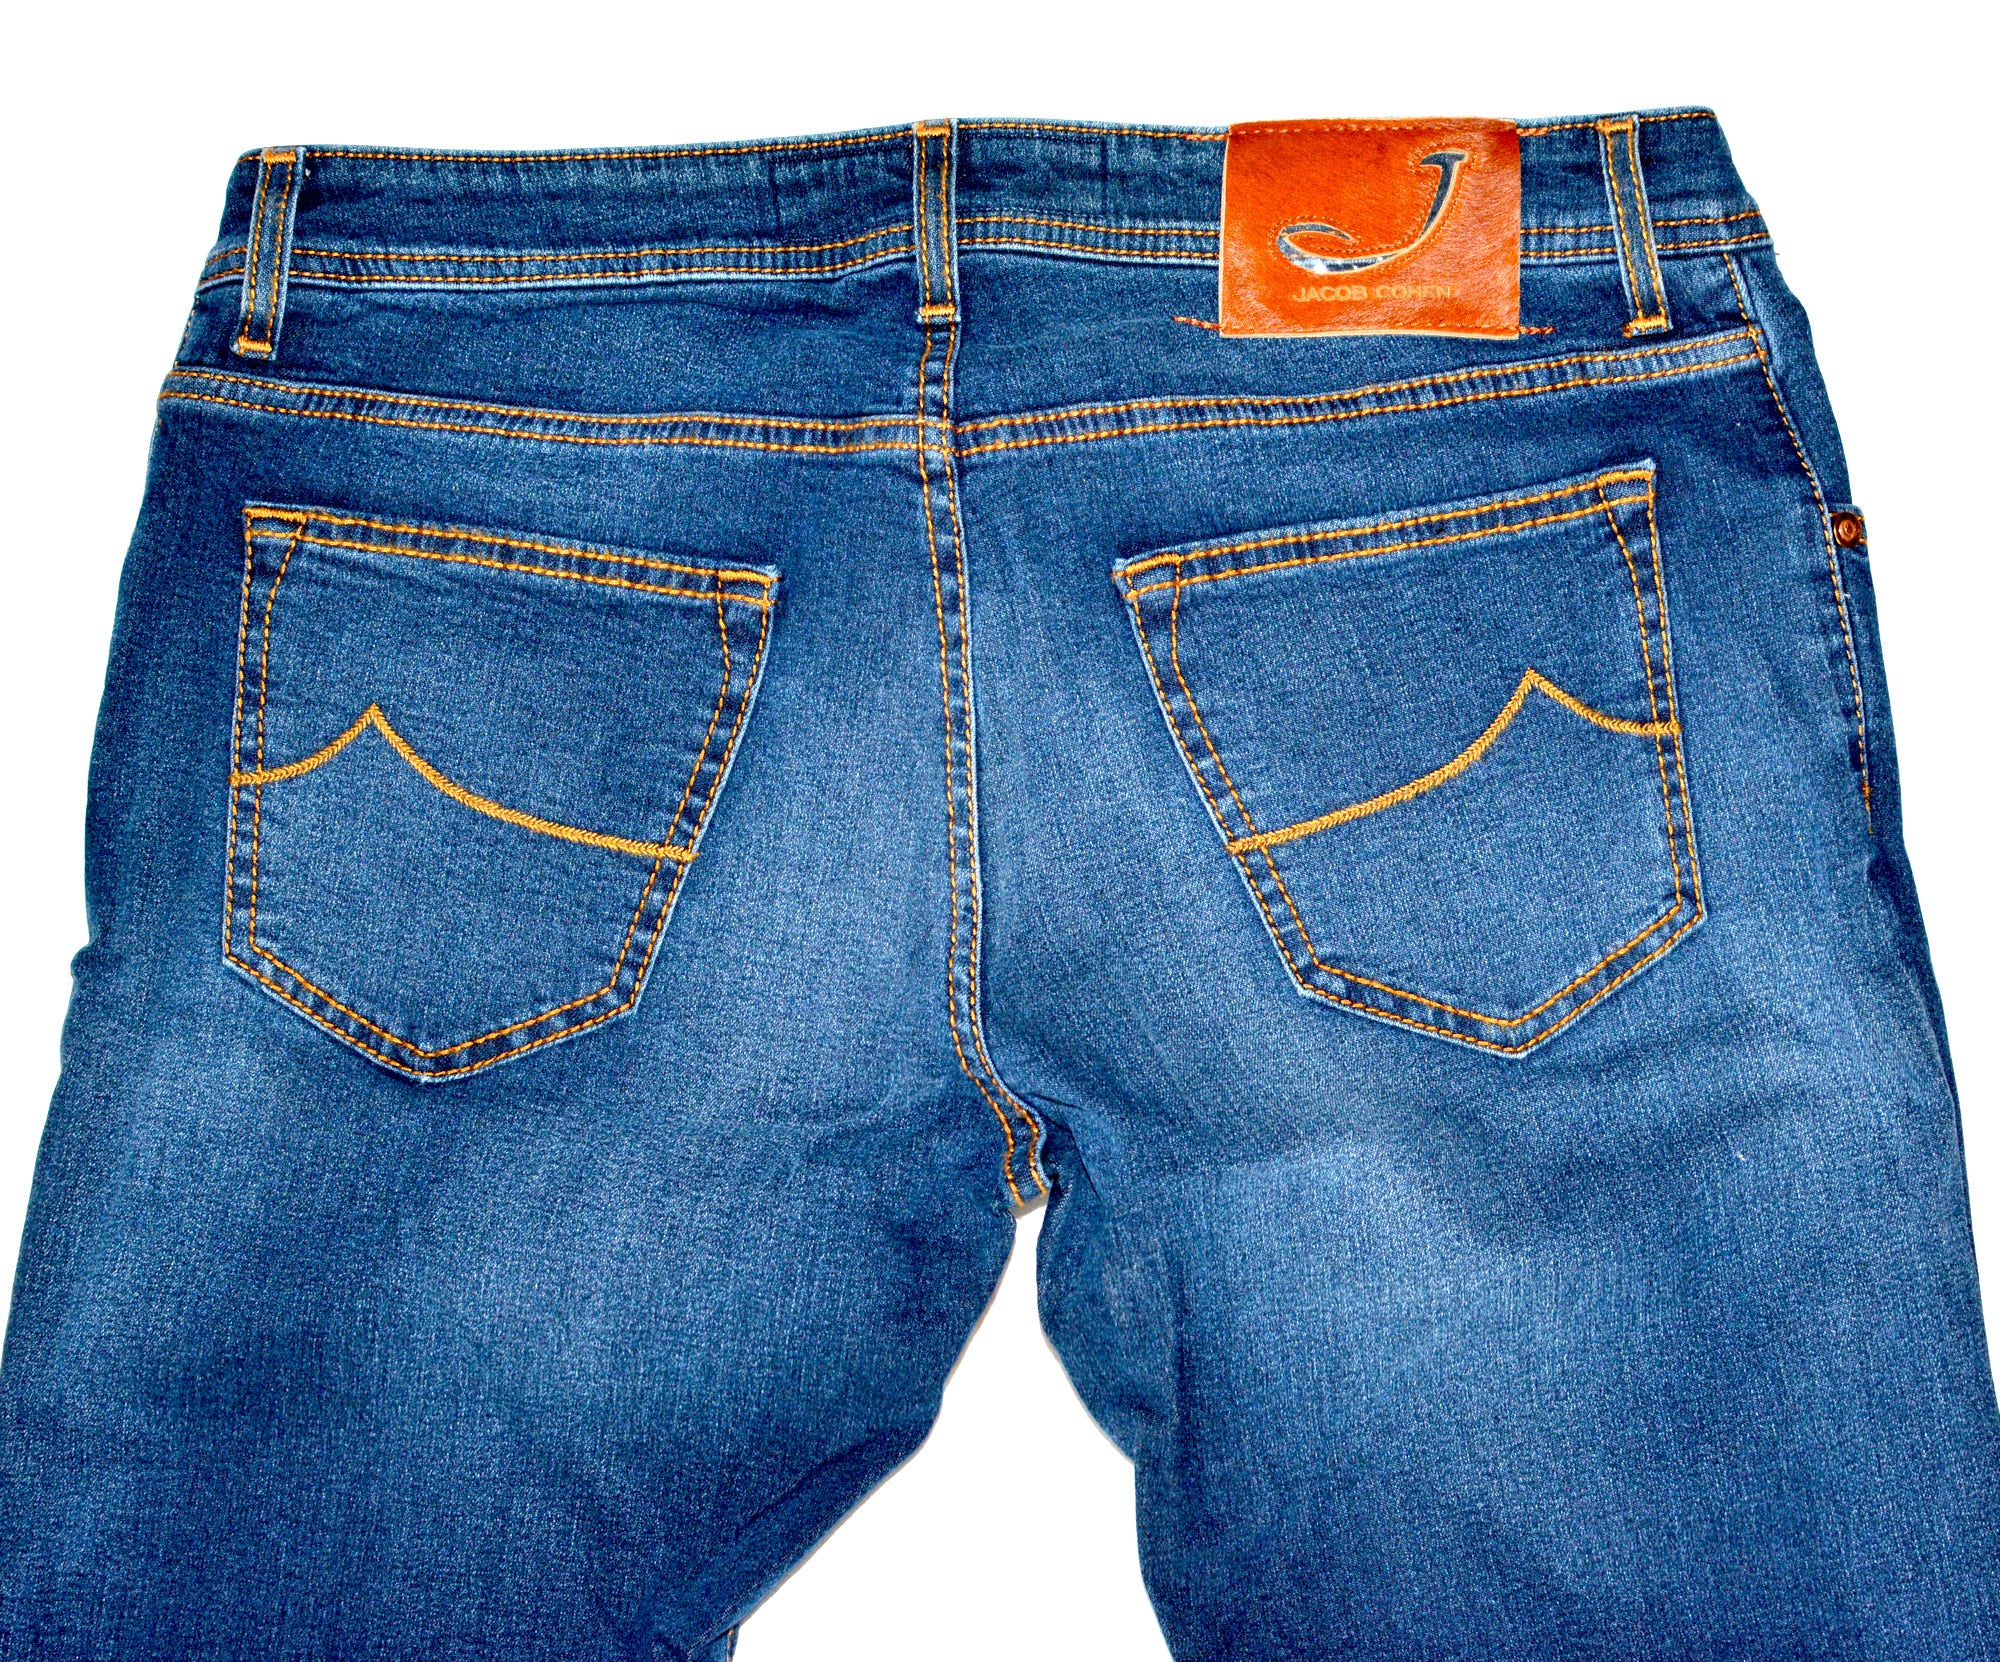 JACOB COHEN J688 Comfort Vintage Blue Cotton Stretch Slim Fit Jeans Pants US 32